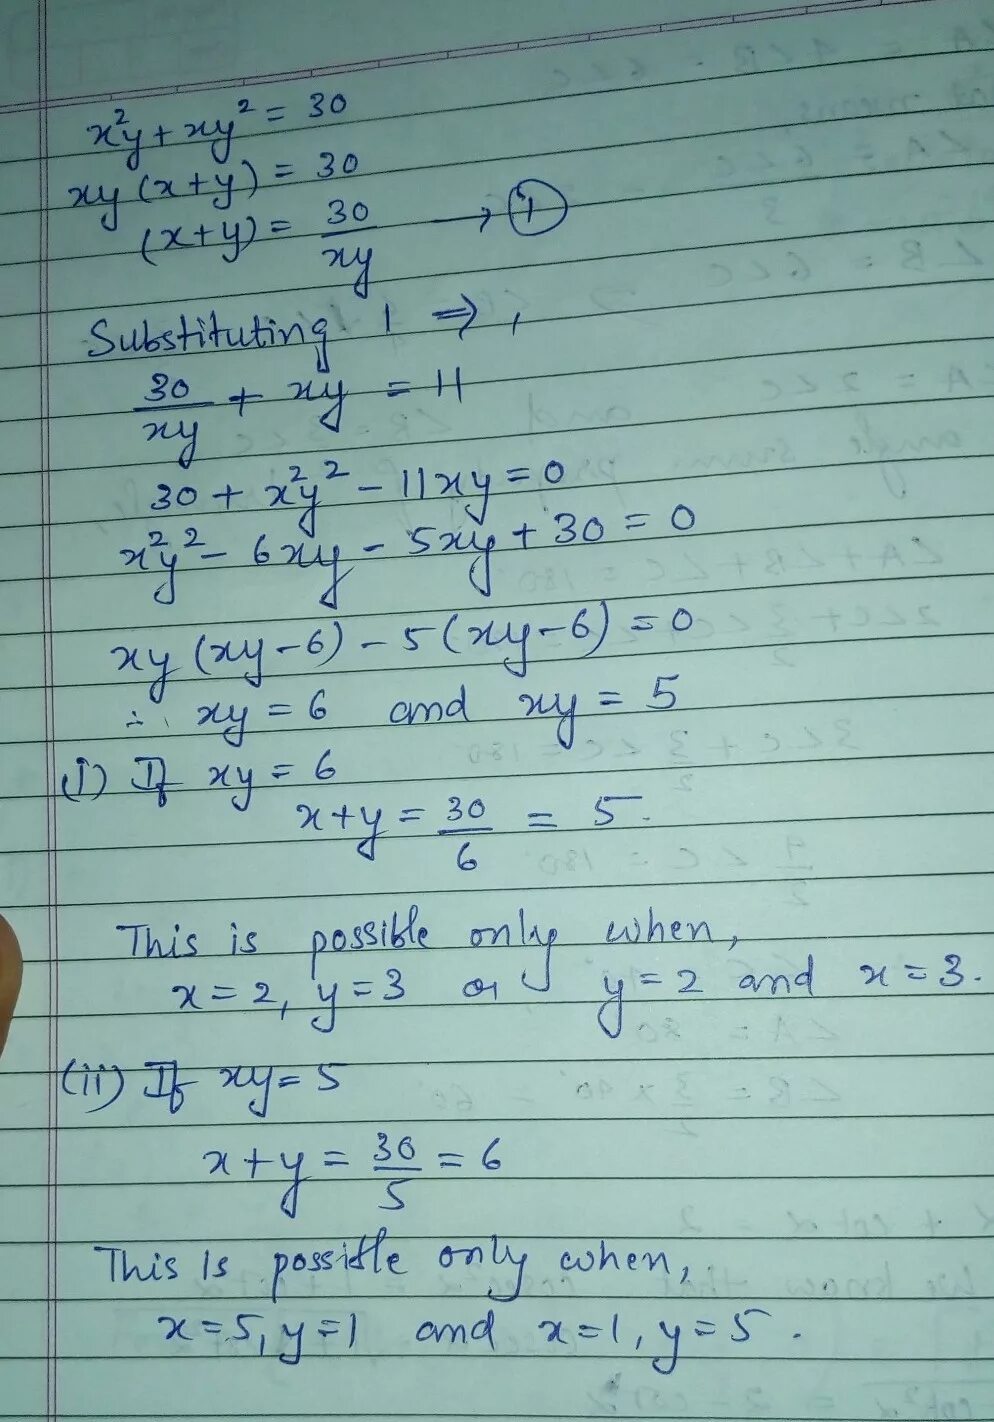 XY X Y 11 x2y xy2 30. XY(X-Y)=2. Y-XY'=2(1+X^2y'). Y 11tgx-11x+16. 4x y 11 0